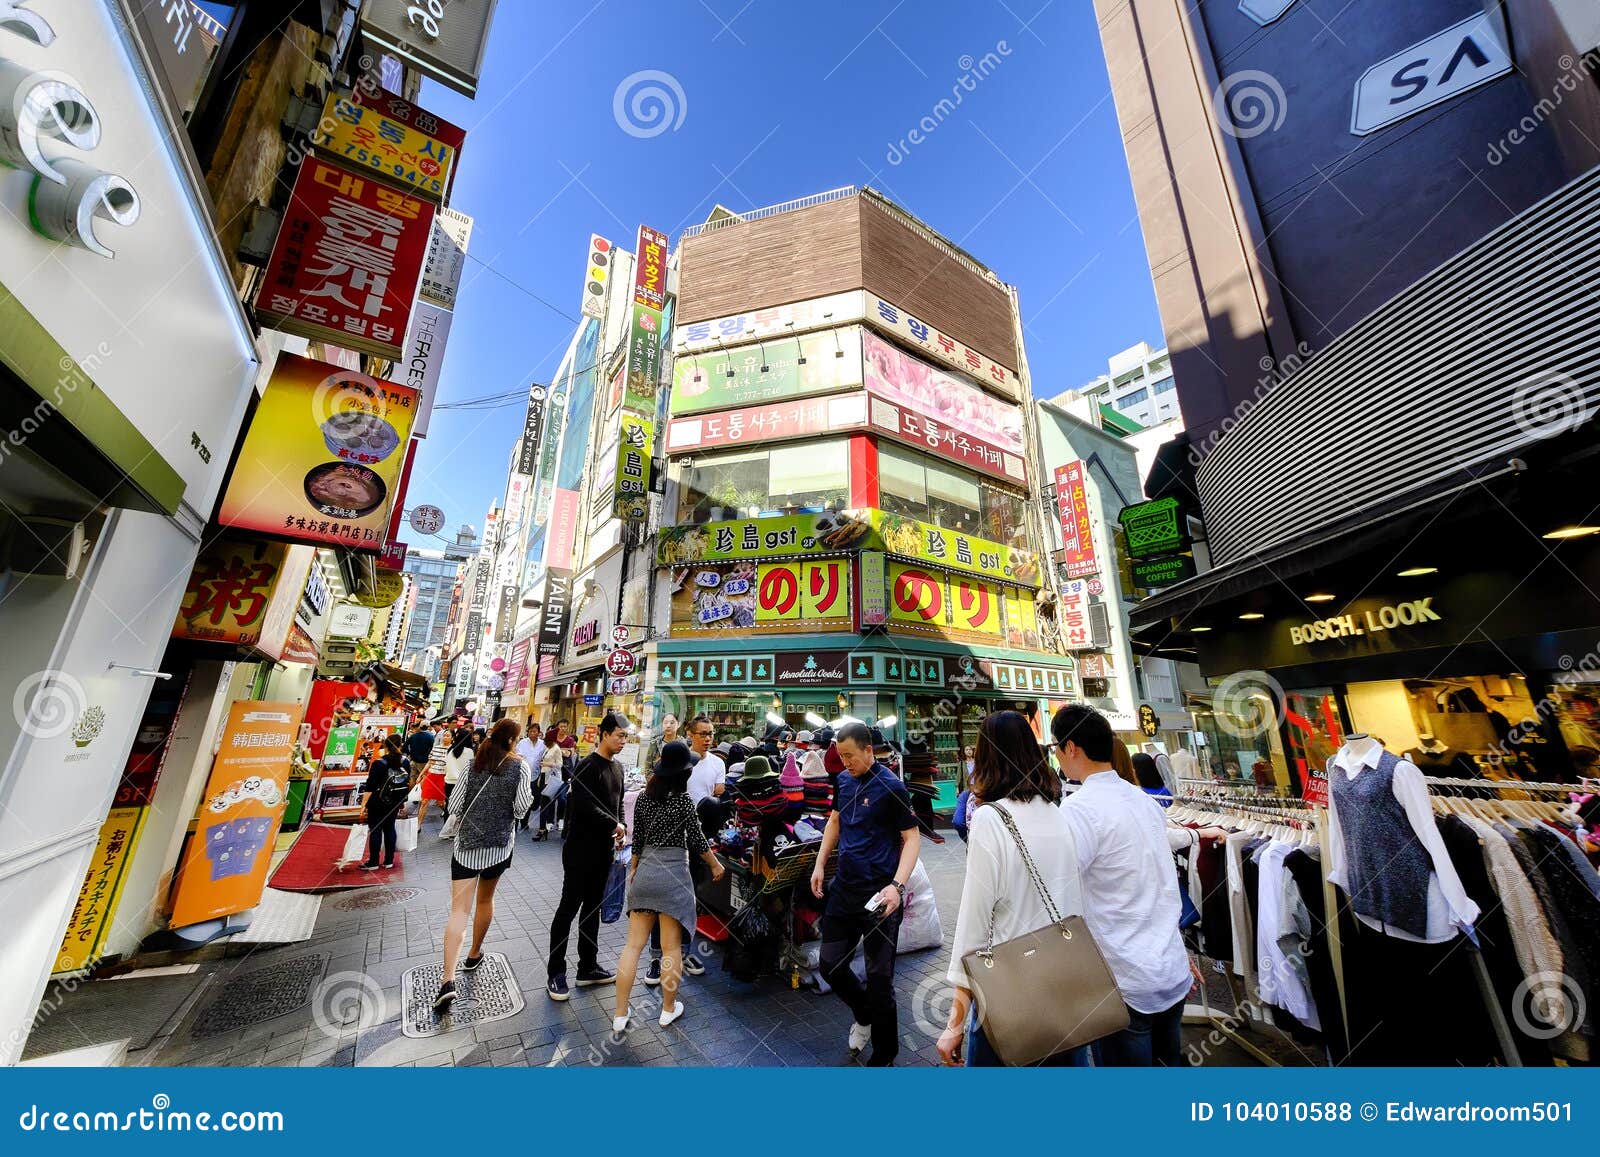 Myeong Shopping  Street Korea  Editorial Stock Photo 